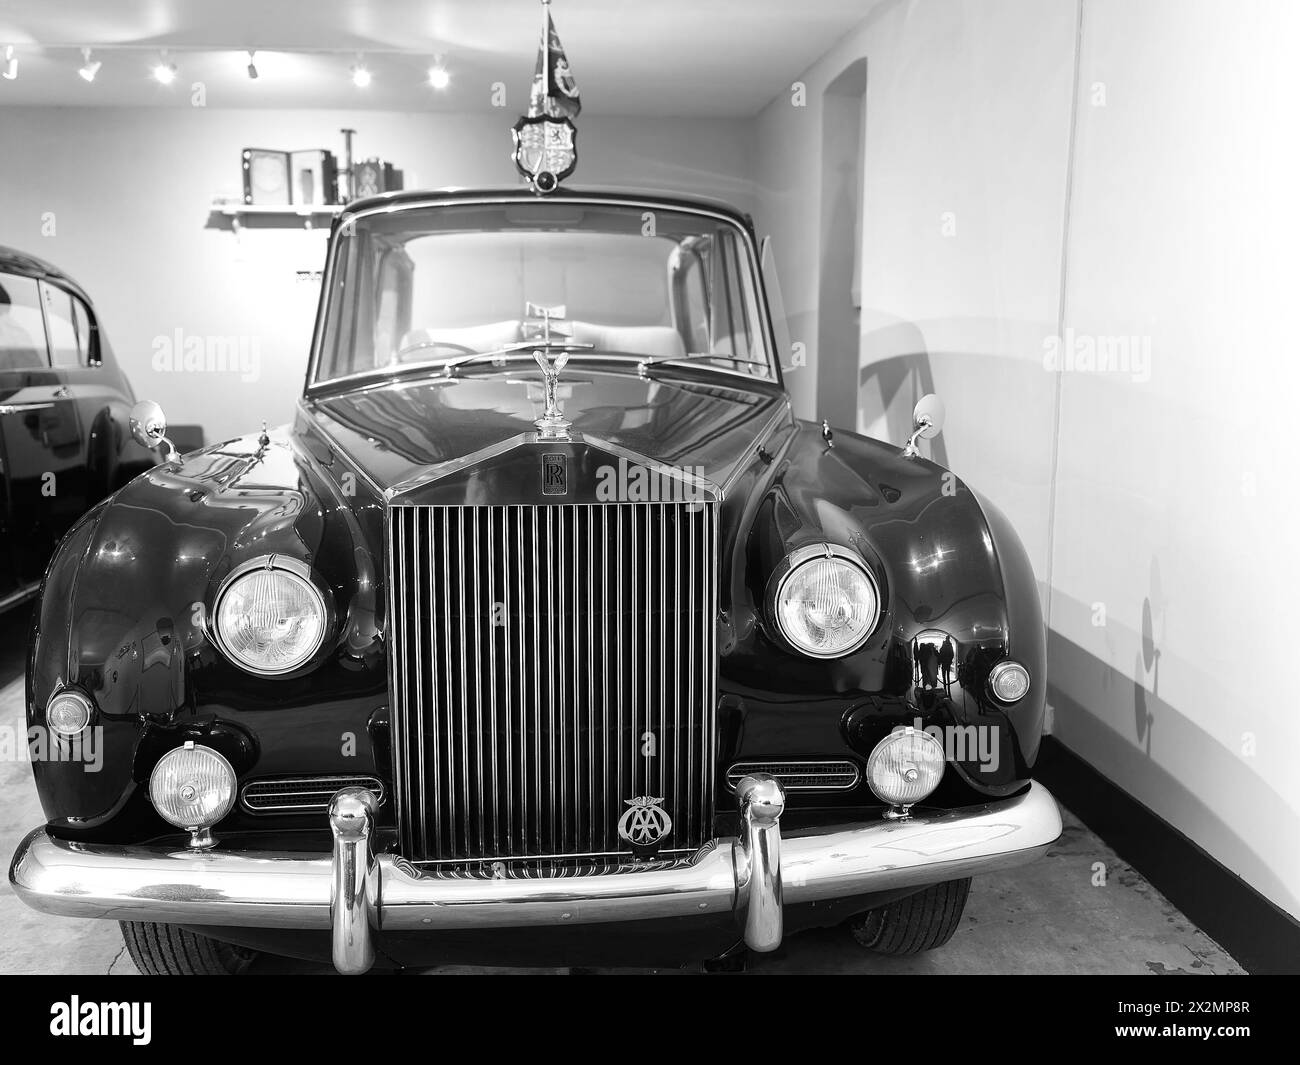 Rolls Royce Phantom, usata dalla regina Elisabetta II dal 1961 al 2002, in un garage presso la residenza di campagna del monarca britannico, Sandringham House. Foto Stock